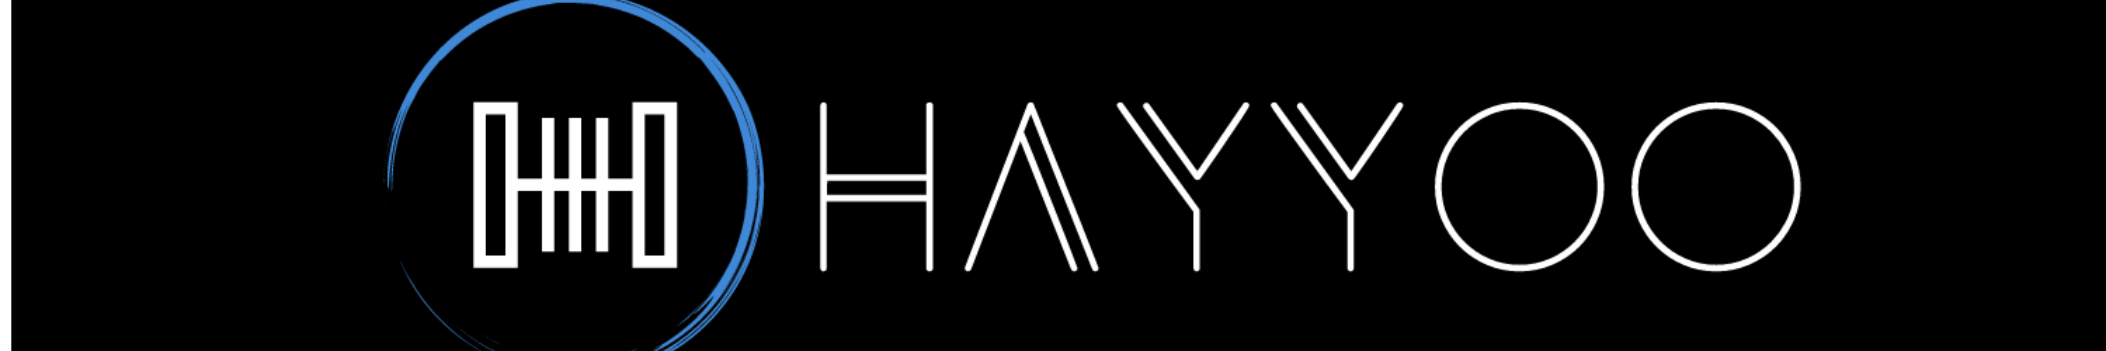 Hayyoo